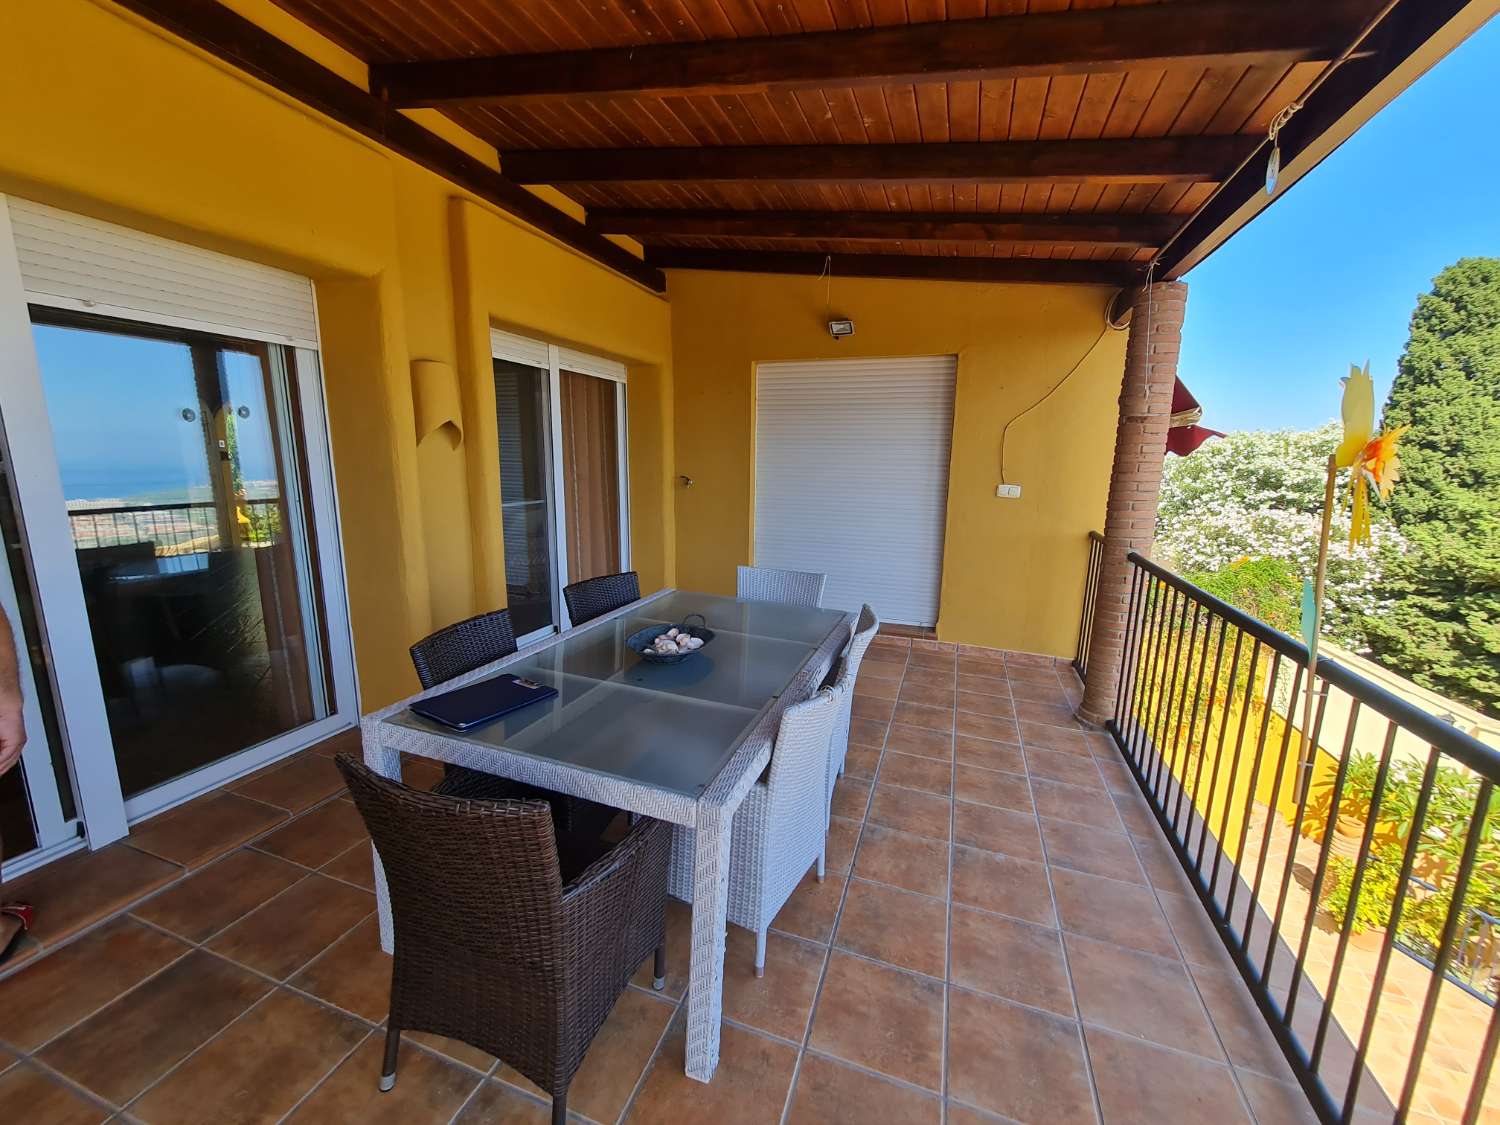 Luxury villa for sale in the Monte de Los Almendros urbanization in Salobreña